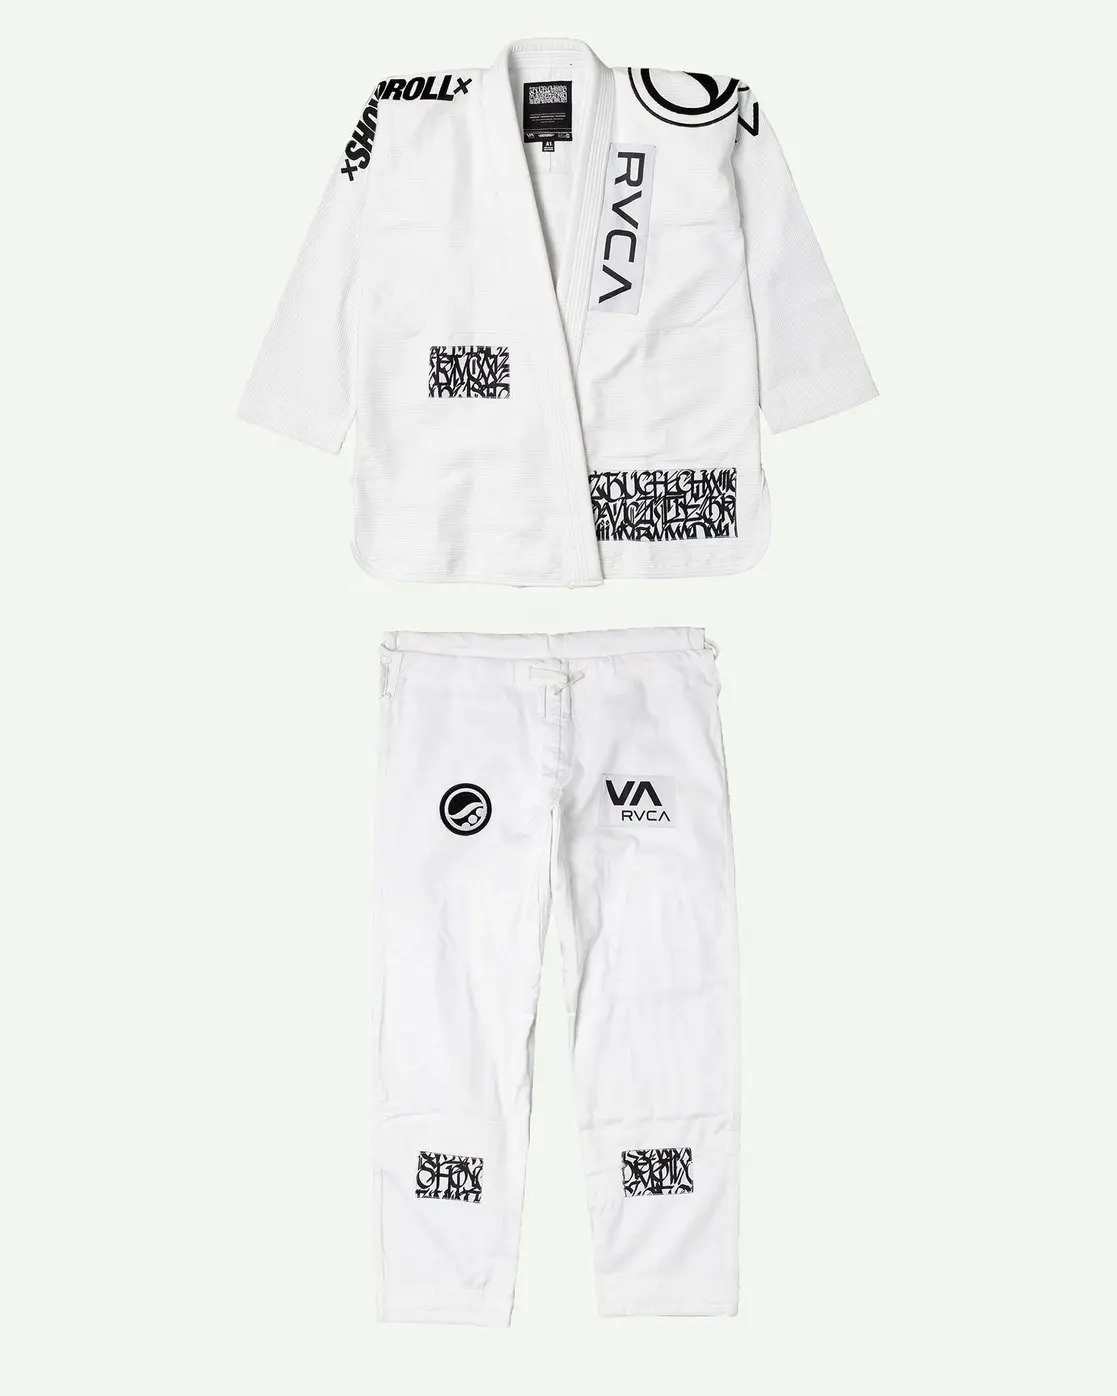 Rvca Shoyoroll Jiujitsu Gi Voor Mannen Premium Jiu Jitsu Gis Cotton Bjj Gi Brazilian Jiu Jitsu Kimono Uniform Wit